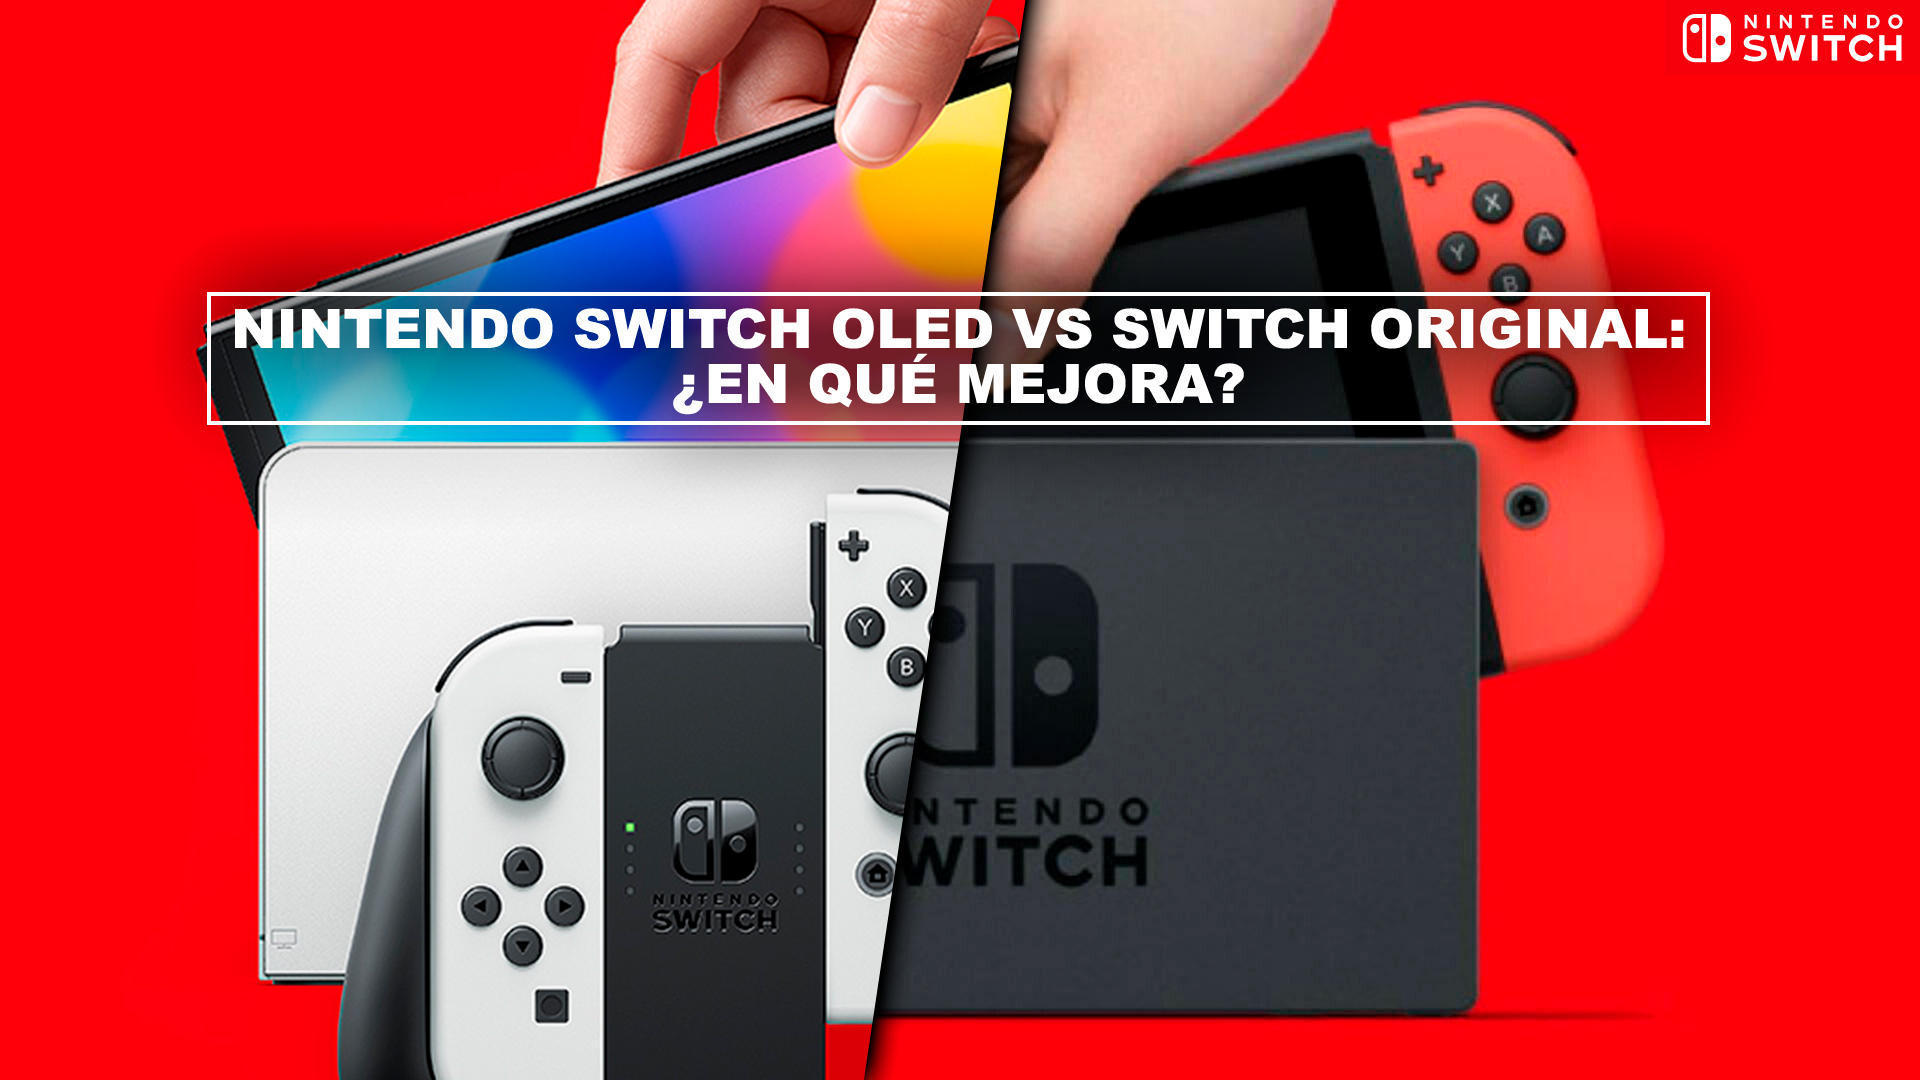 Nintendo Switch OLED vs original: ¿en qué mejora? - Diferencias y comparativa